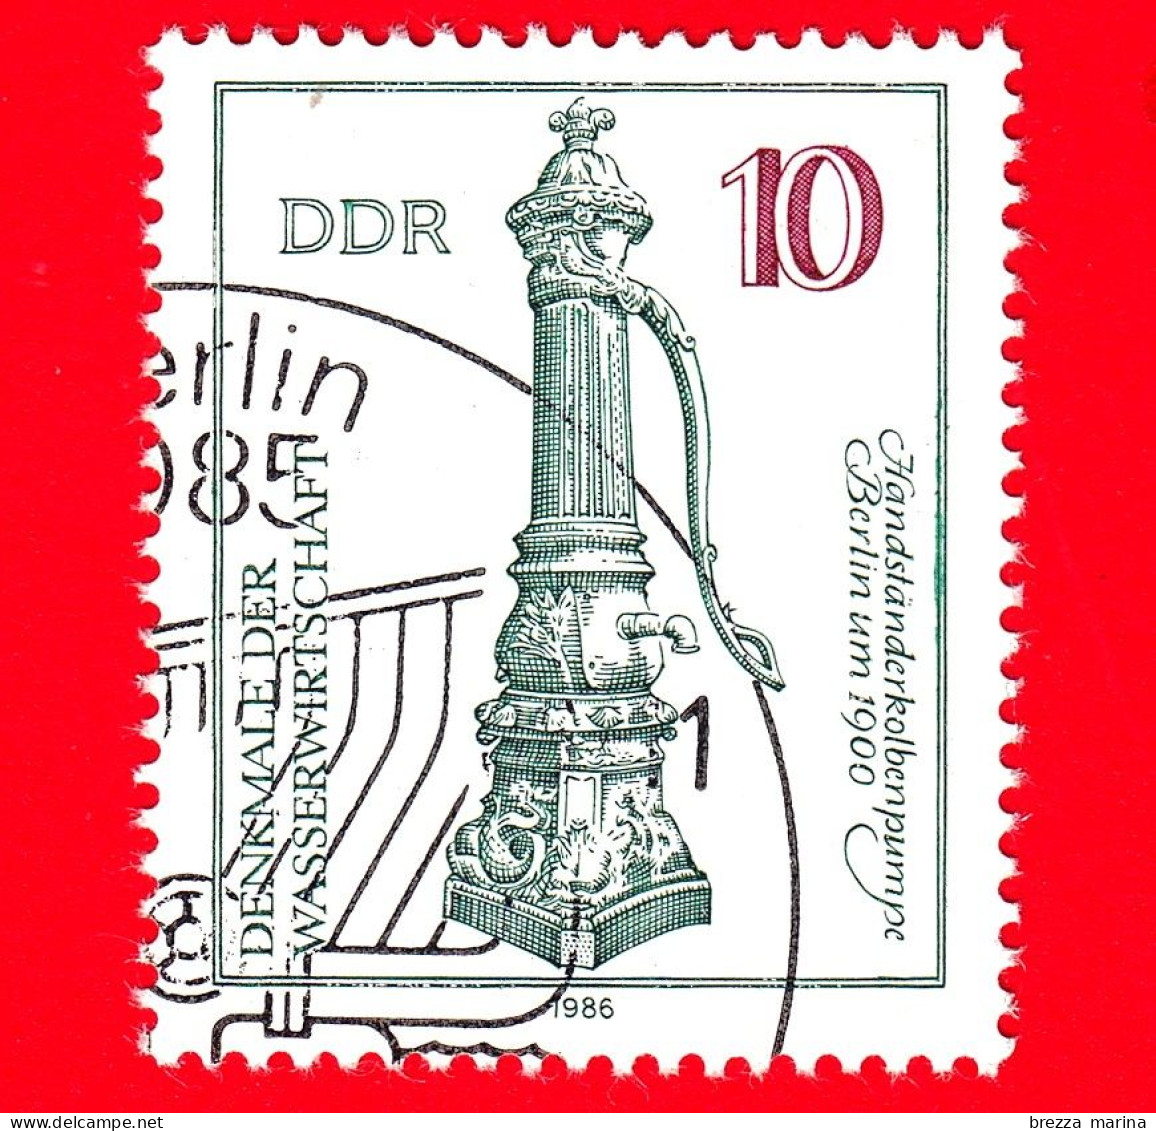 GERMANIA - DDR - Usato - 1986 - Tecnologia Dell'acqua - Pompa A Mano, Berlino (1900) - 50 - Gebraucht